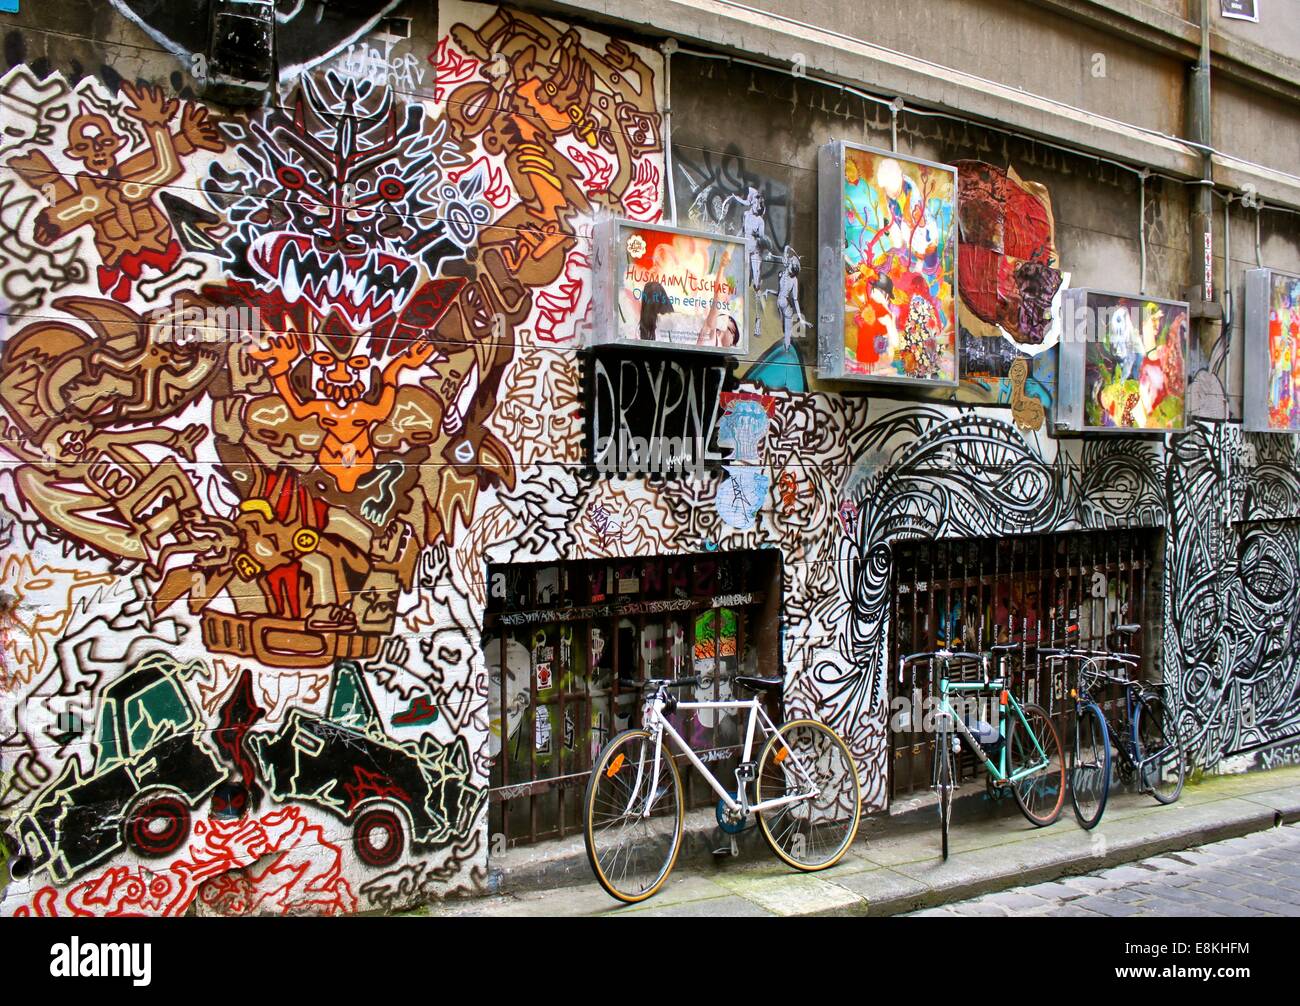 Street art graffiti, Hosier Lane, Melbourne Stock Photo